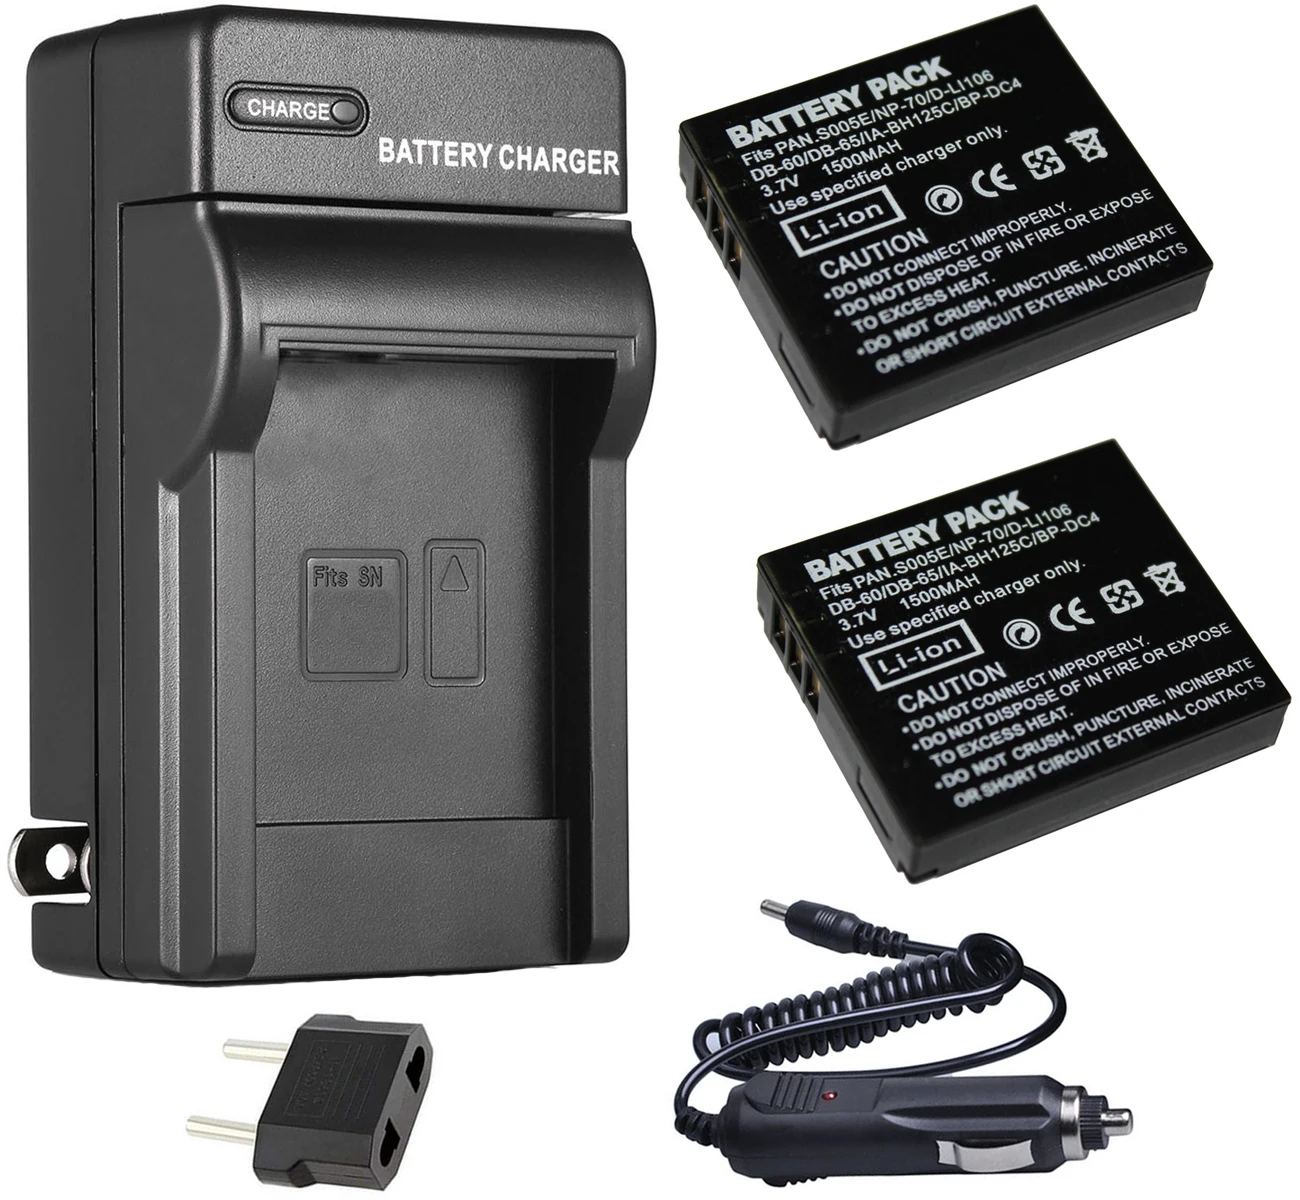 

Battery 2-Pack + Charger for Ricoh WG-M1, WGM1, GR-2, GR2, GRII, GR II, GR Digital II, Caplio R3,R4, R5, R30, R40 Digital Camera